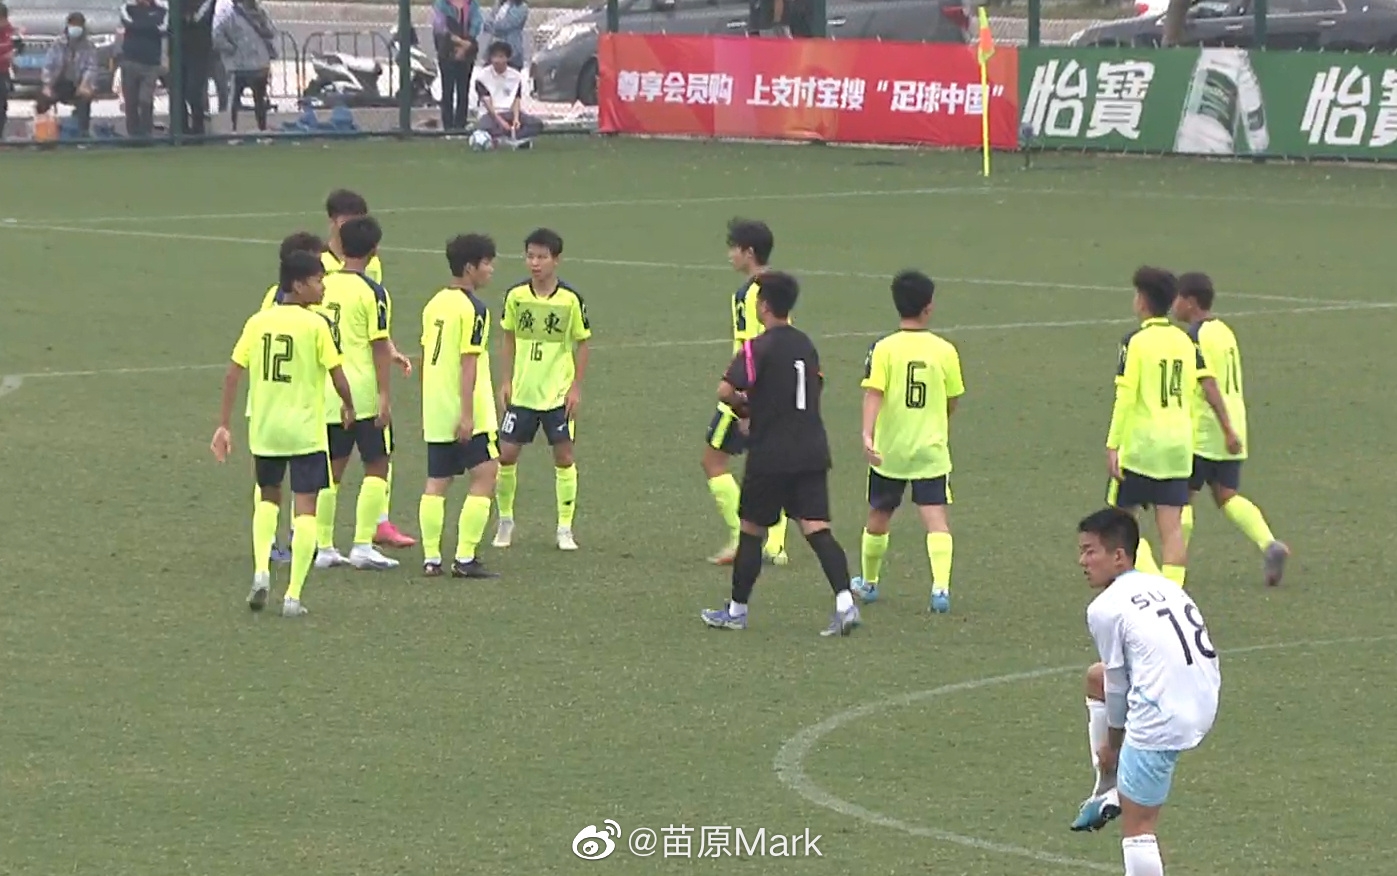 广州足协U15假球案被罚 下属球队比赛用“广东”贴纸覆盖“广州”